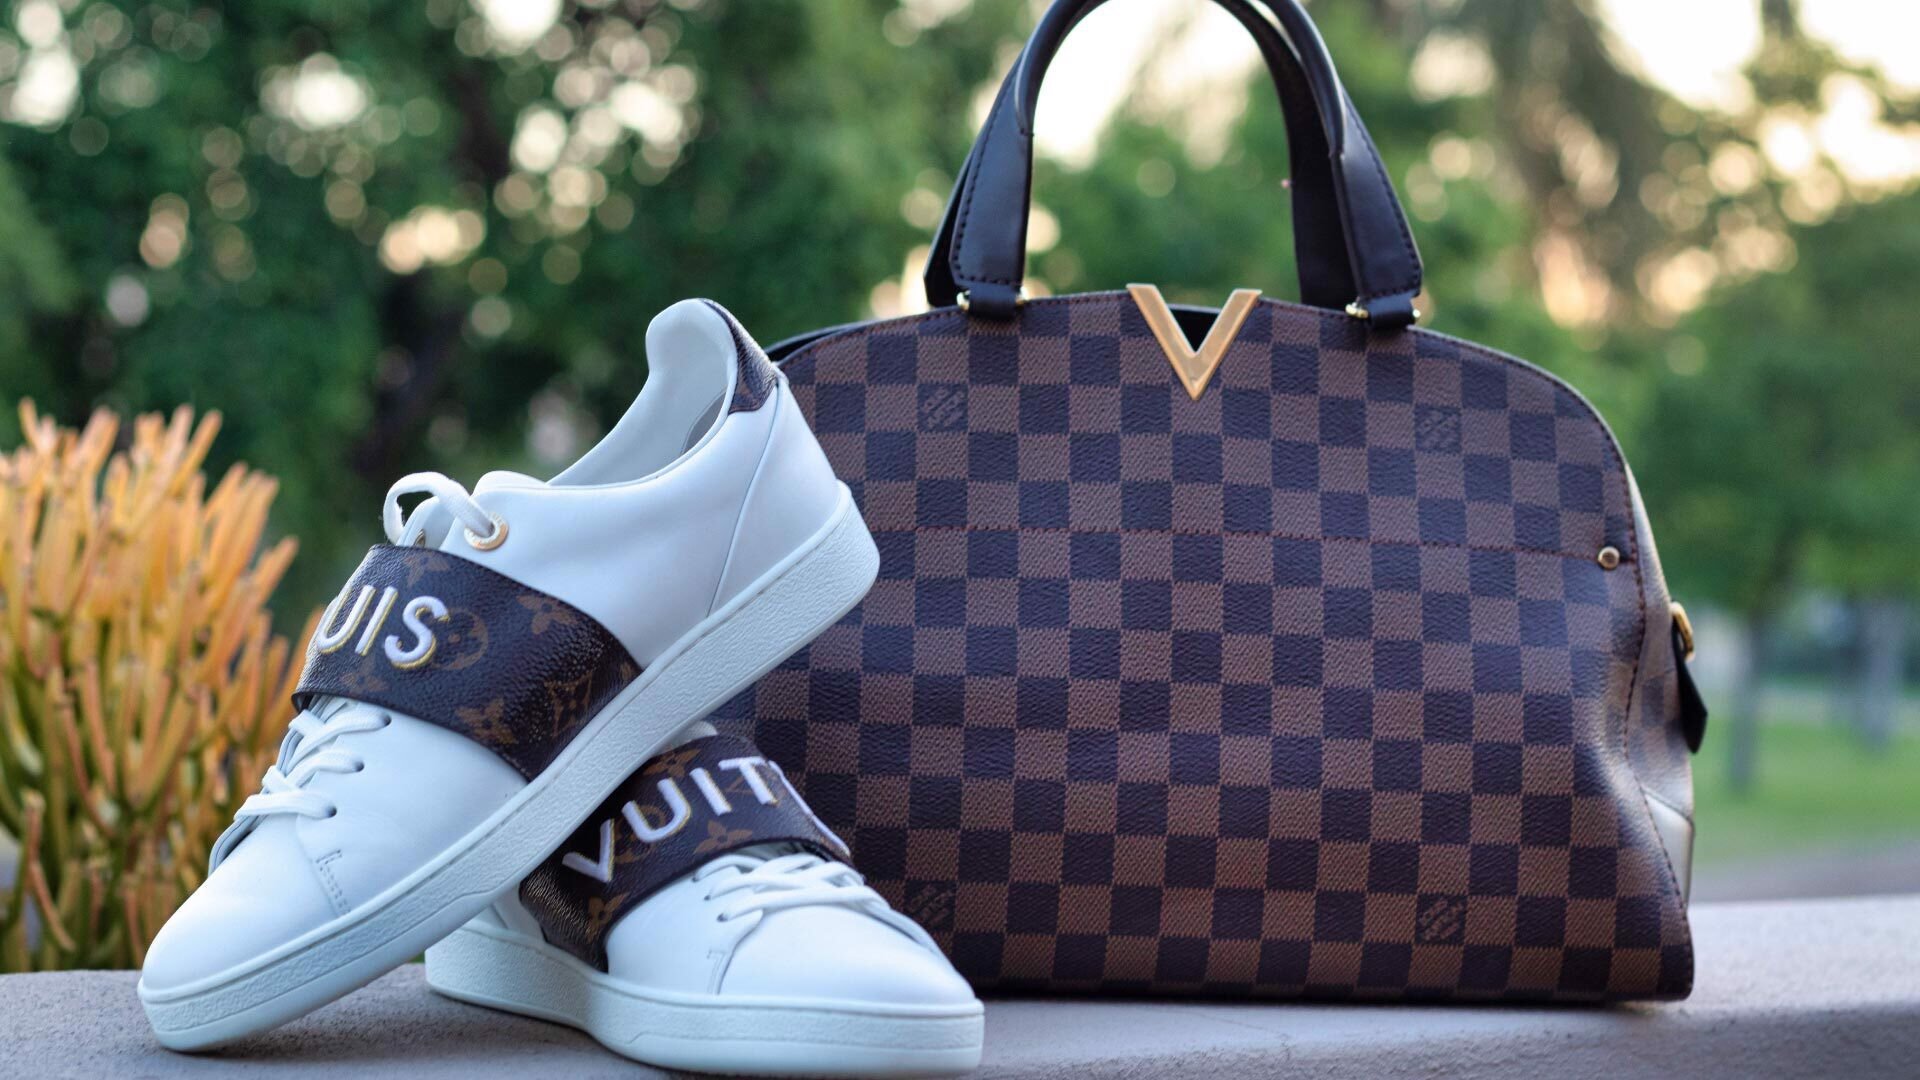 Bảng size giày Louis Vuitton và cách chọn fit size dành cho bạn   AuthenticShoes